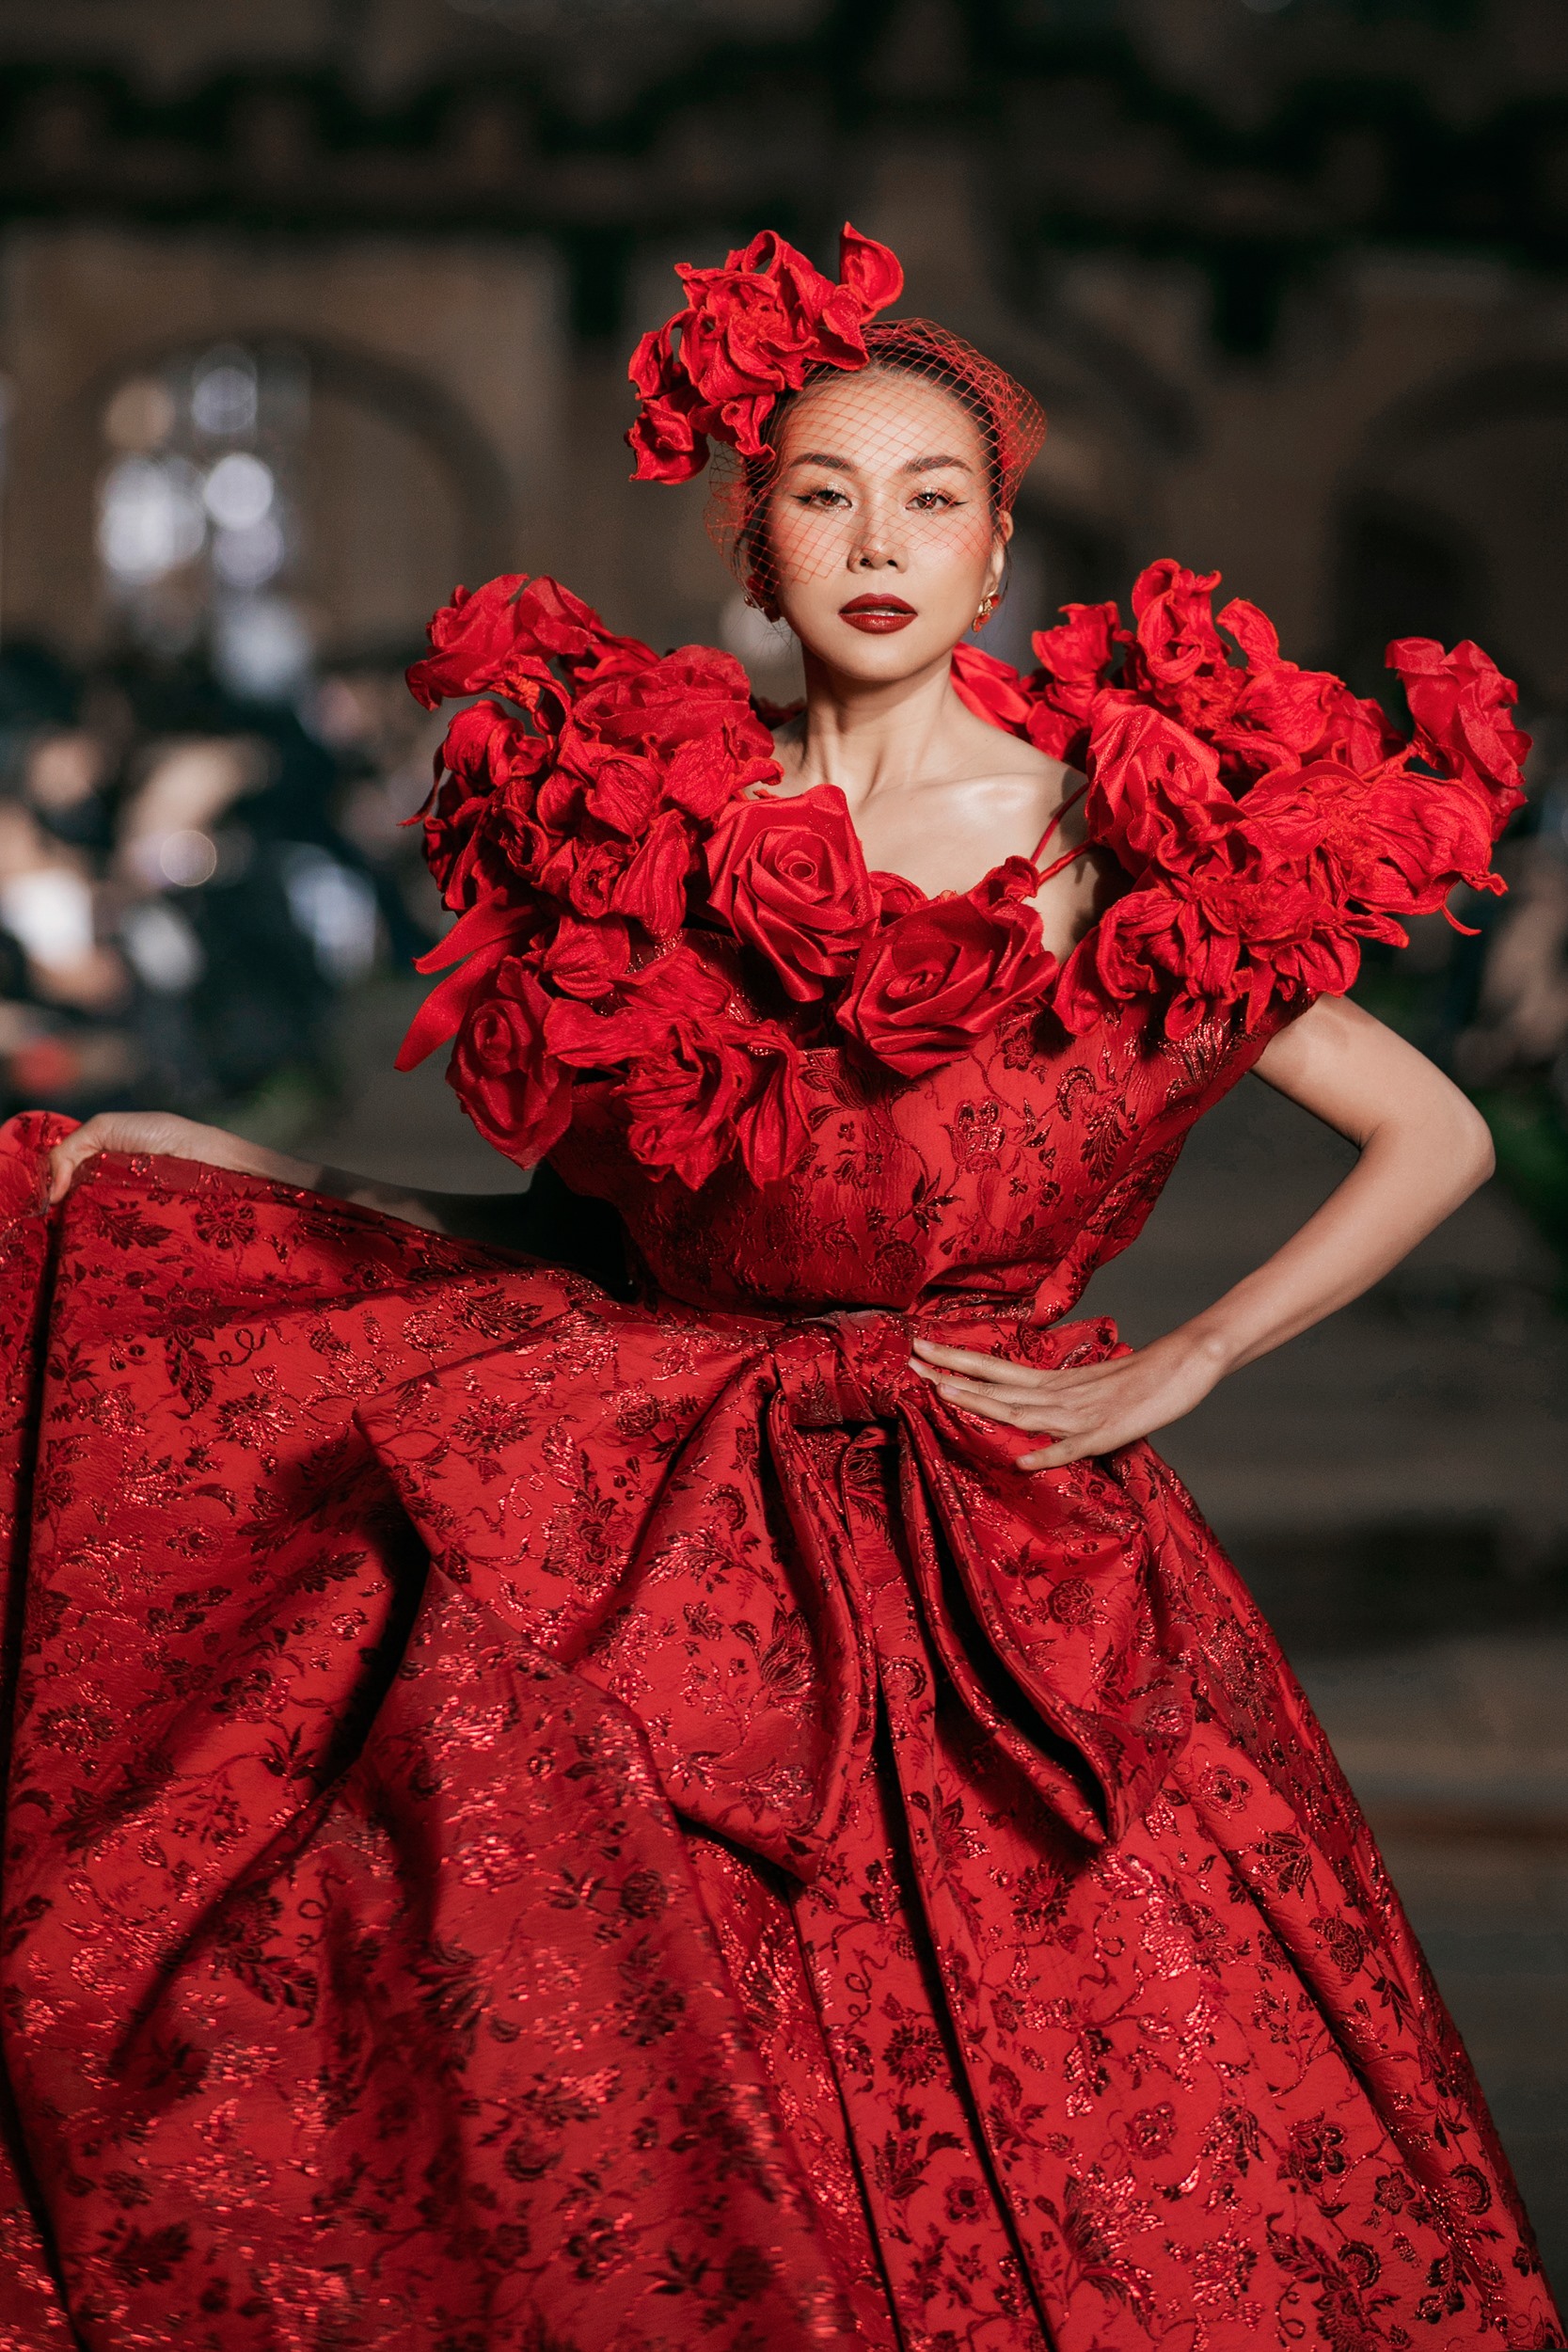 Siêu mẫu Thanh Hằng trình diễn thiết kế màu đỏ nổi bật nặng đến 15 kg với điểm nhấn là phần bèo nhún tinh xảo ở phần vai áo trông như những nụ hoa đang bung nở. Ảnh: Kiếng Cận